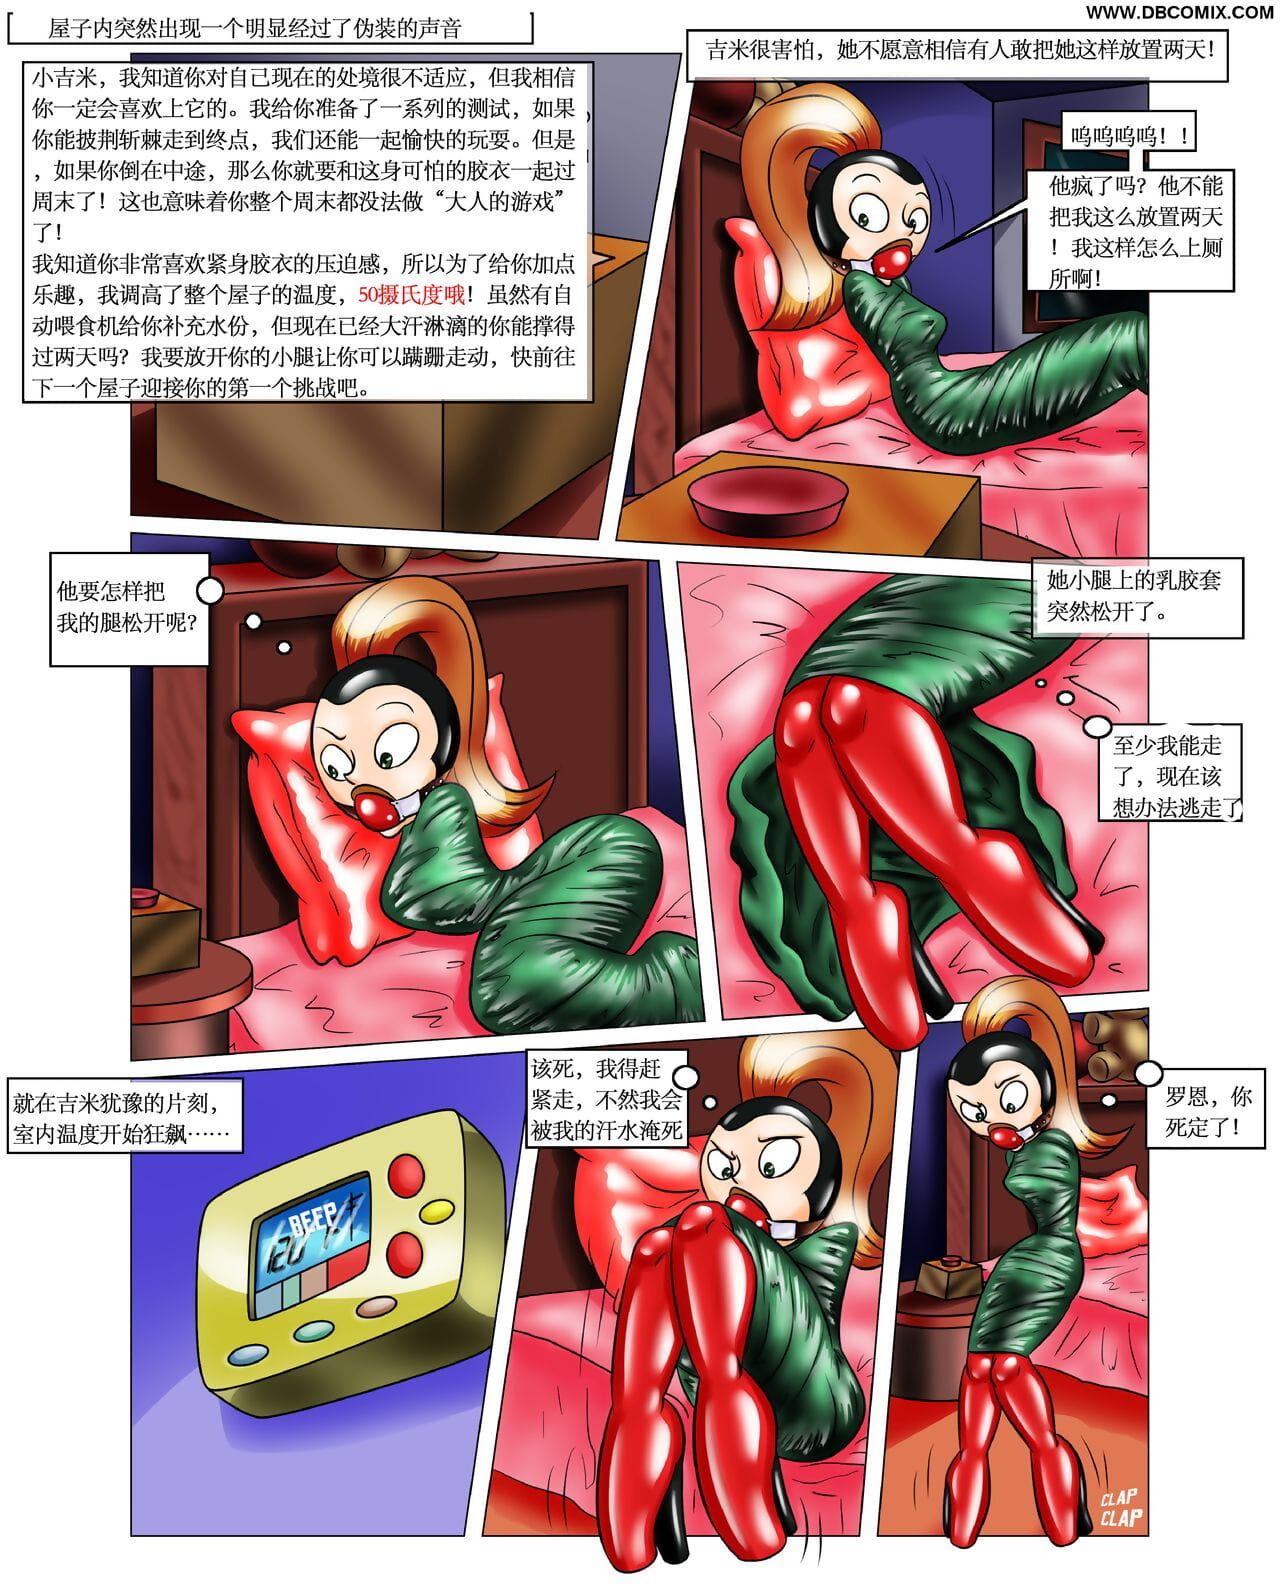 quá tục tĩu rons Món quà 【大头翻译】 page 1